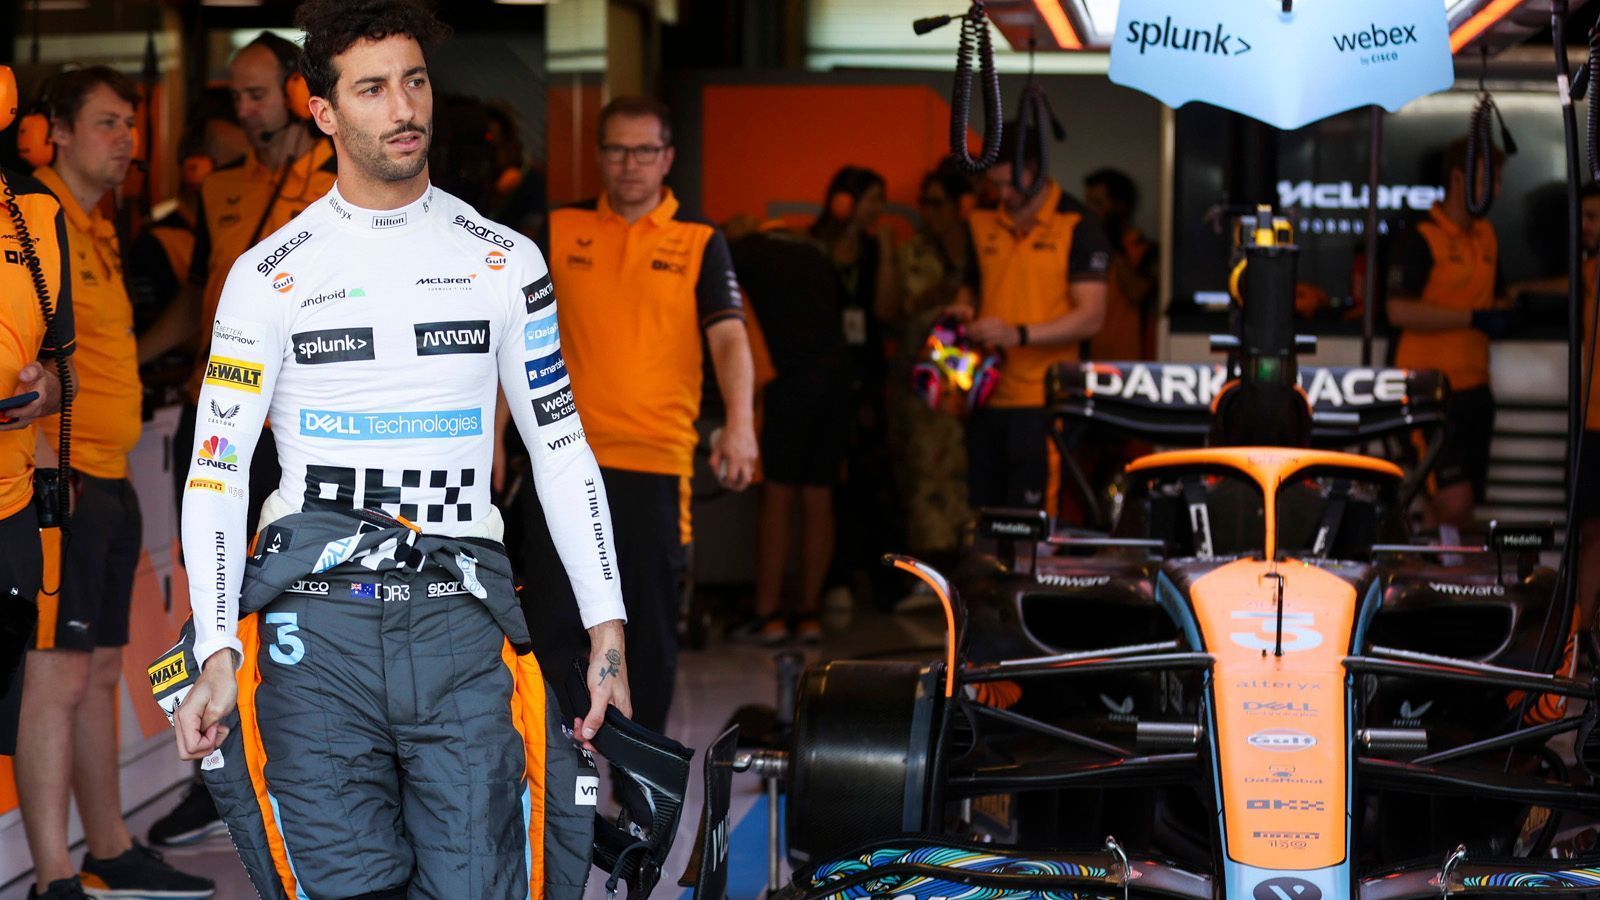 
                <strong>Verlierer: Daniel Ricciardo</strong><br>
                Daniel Ricciardo war im McLaren lediglich ein Hinterherfahrer. Nur 37 Punkte bekam der achtmalige Grand-Prix-Sieger zusammen und hatte damit gegenüber seinem Teamkollegen Lando Norris (122 Punkte) klar das Nachsehen. Insgesamt verliefen seine beiden Jahre bei McLaren enttäuschend. Dadurch verlor der Australier sein Cockpit in der Formel 1. Ricciardo könnte als dritter Fahrer bei Red Bull einsteigen, würde dann aber vorwiegend für Marketing-Events und als Simulator-Fahrer eingesetzt werden.
              